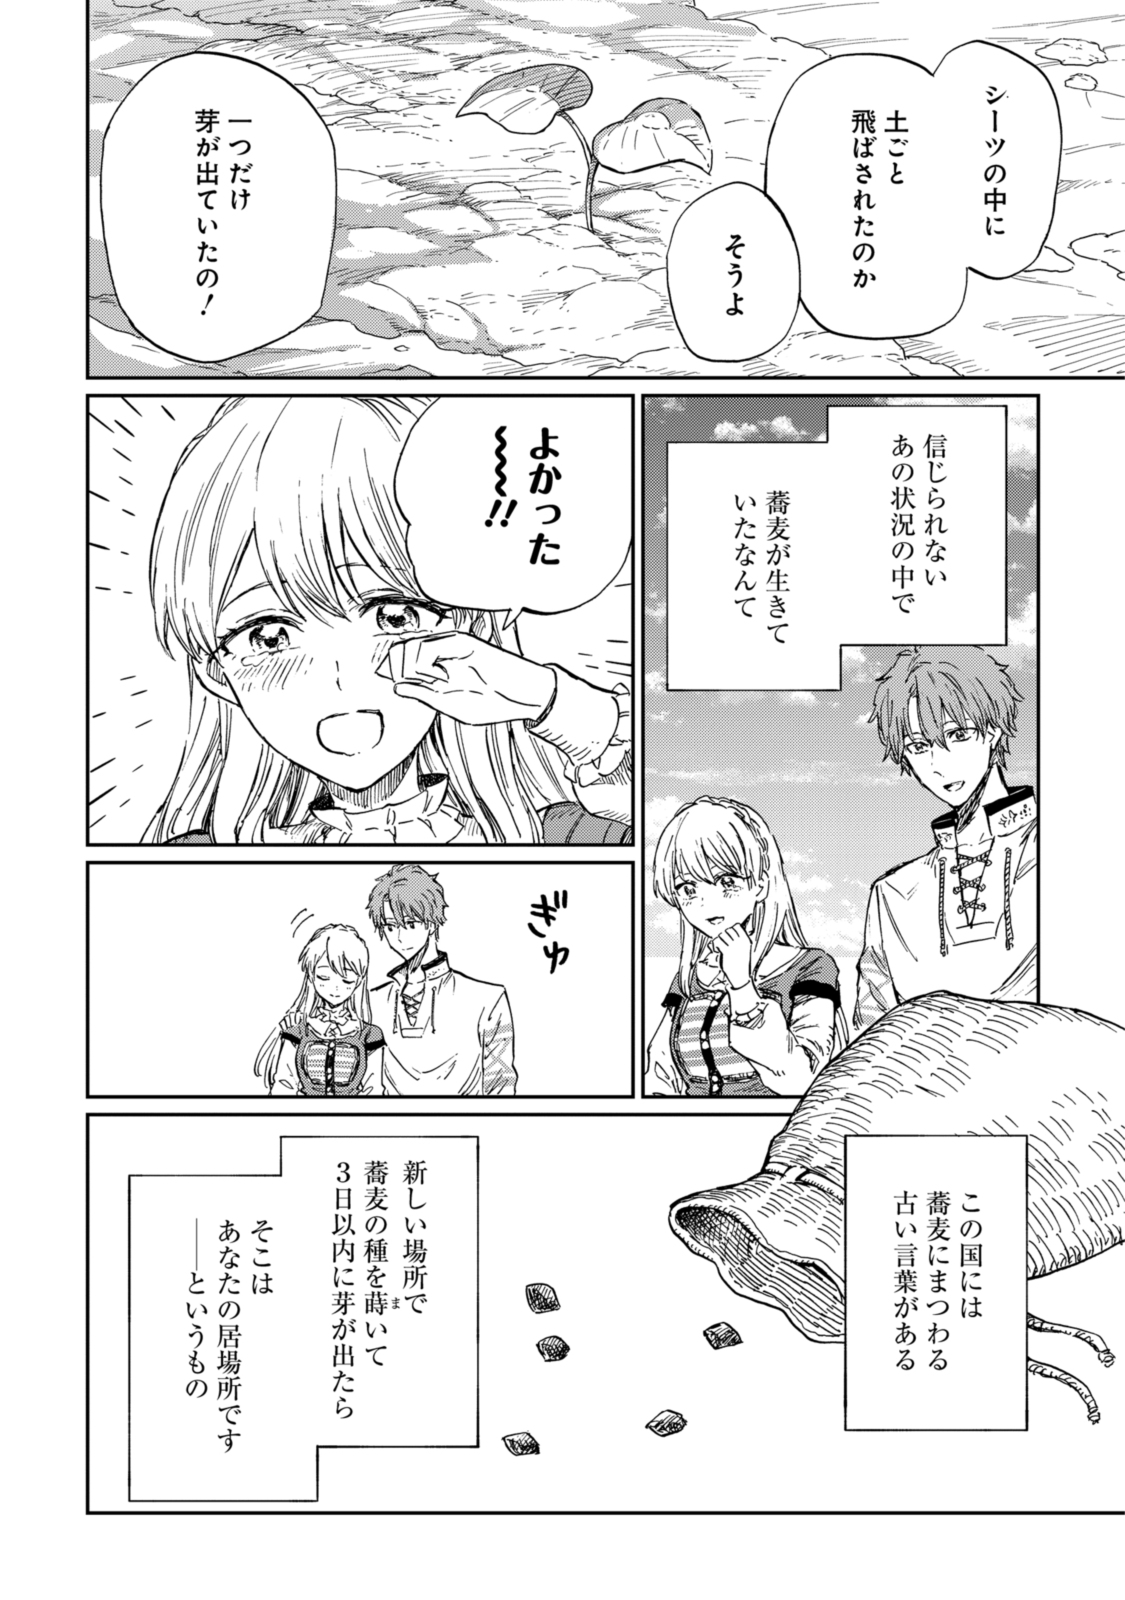 Youhou-ka to Mitsu Kusushi no Hanayome - Chapter 8.2 - Page 10